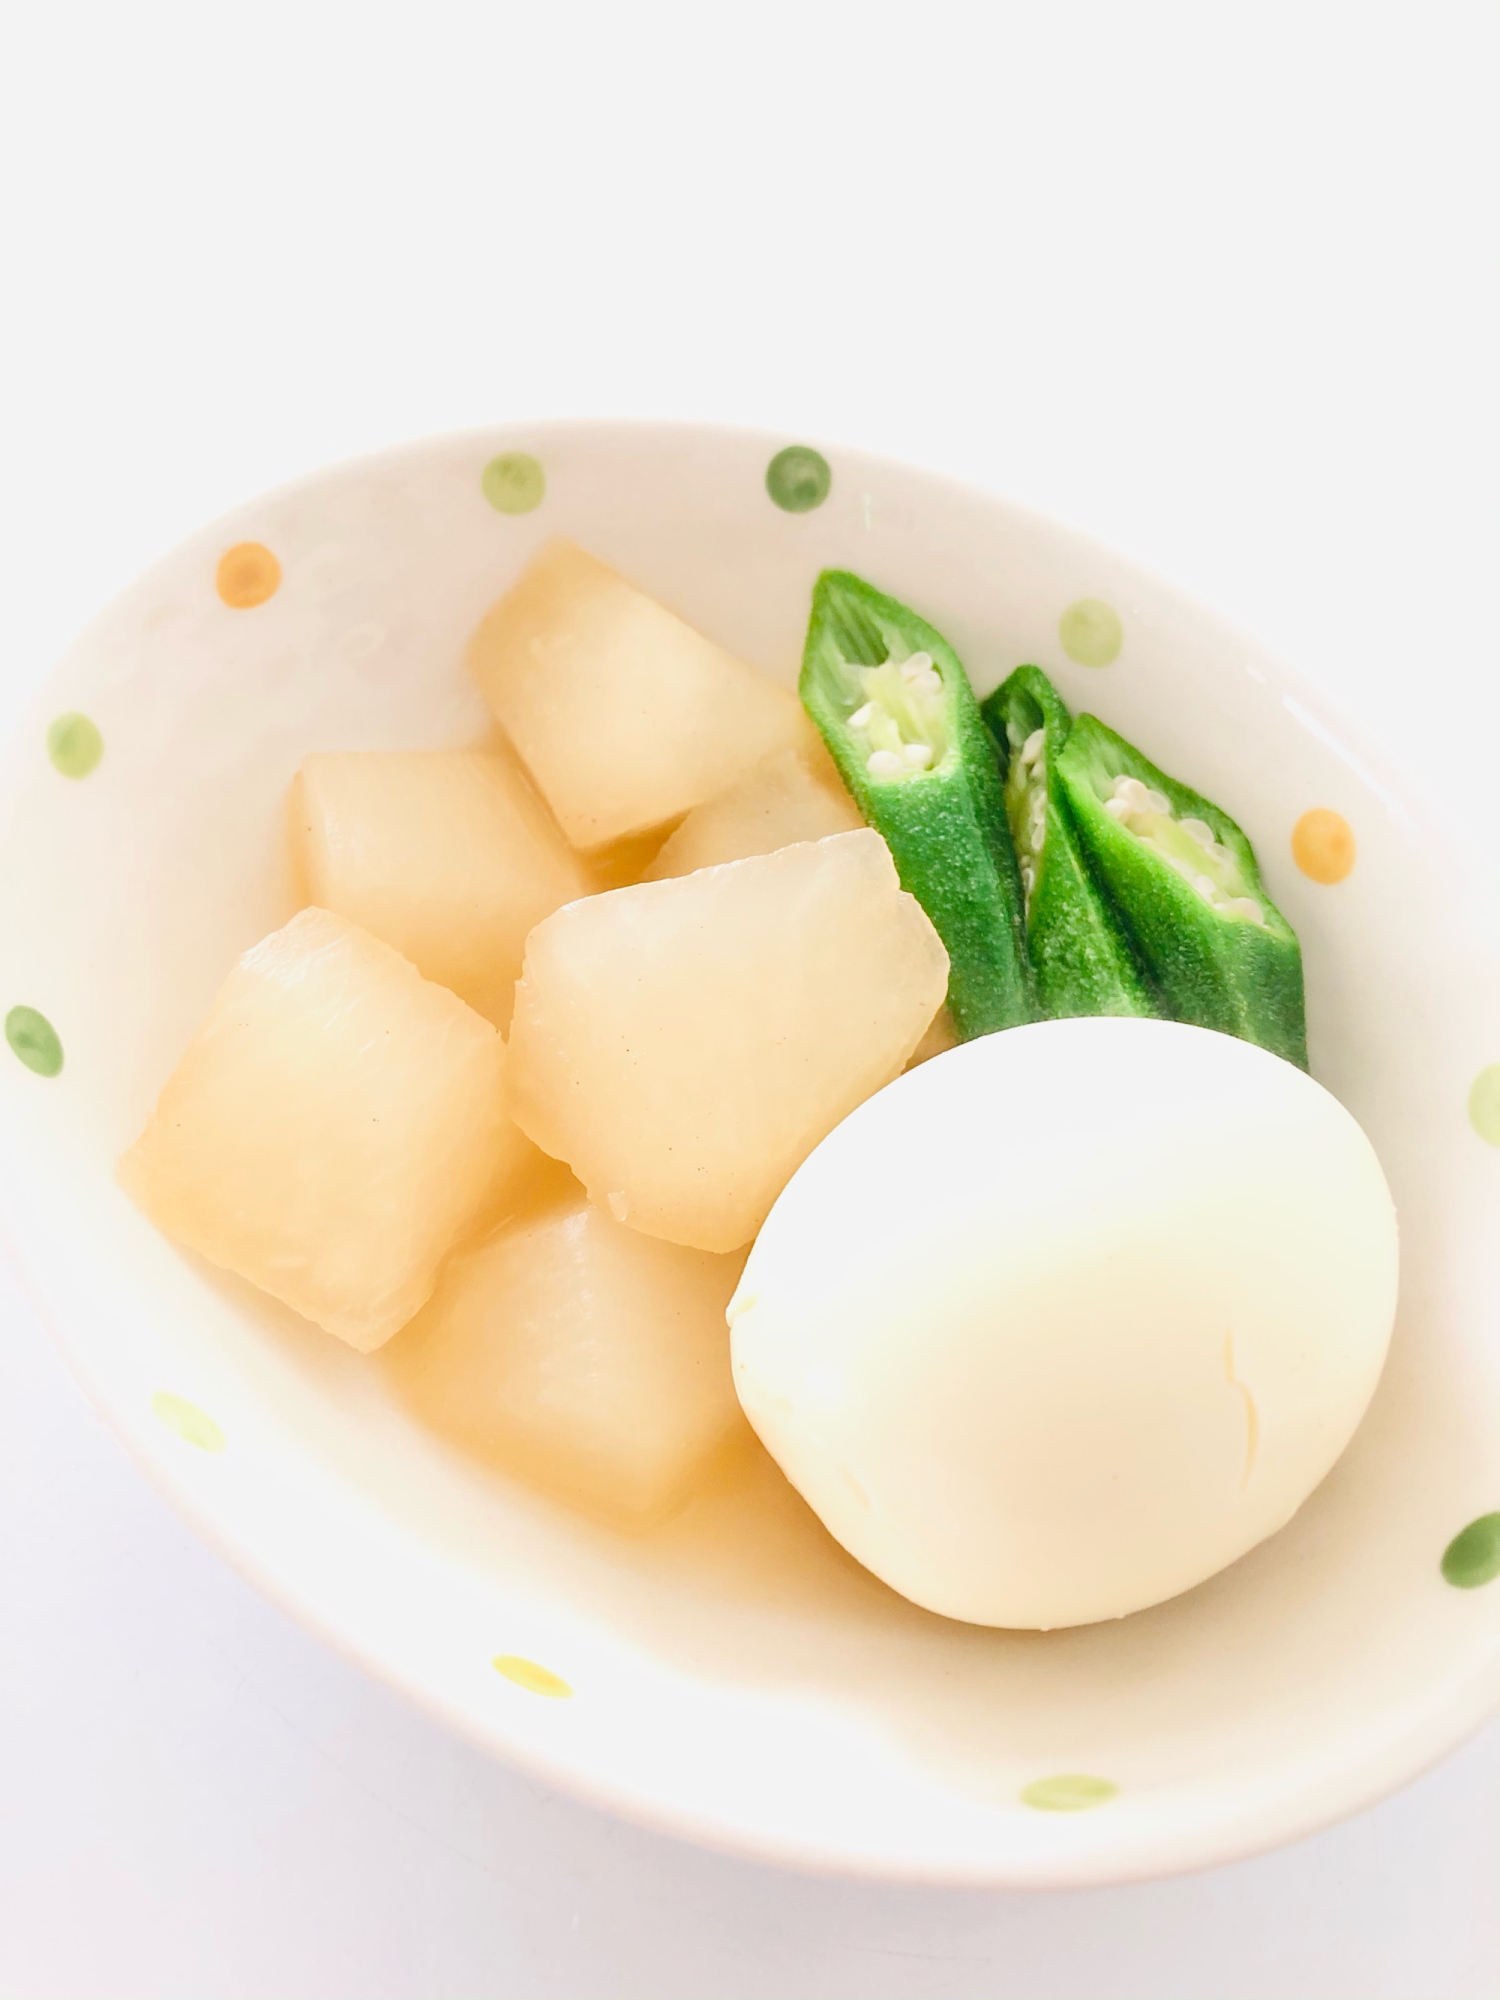 ホッコリ〜(๑ˊᗜˋ๑)大根茹で卵煮物